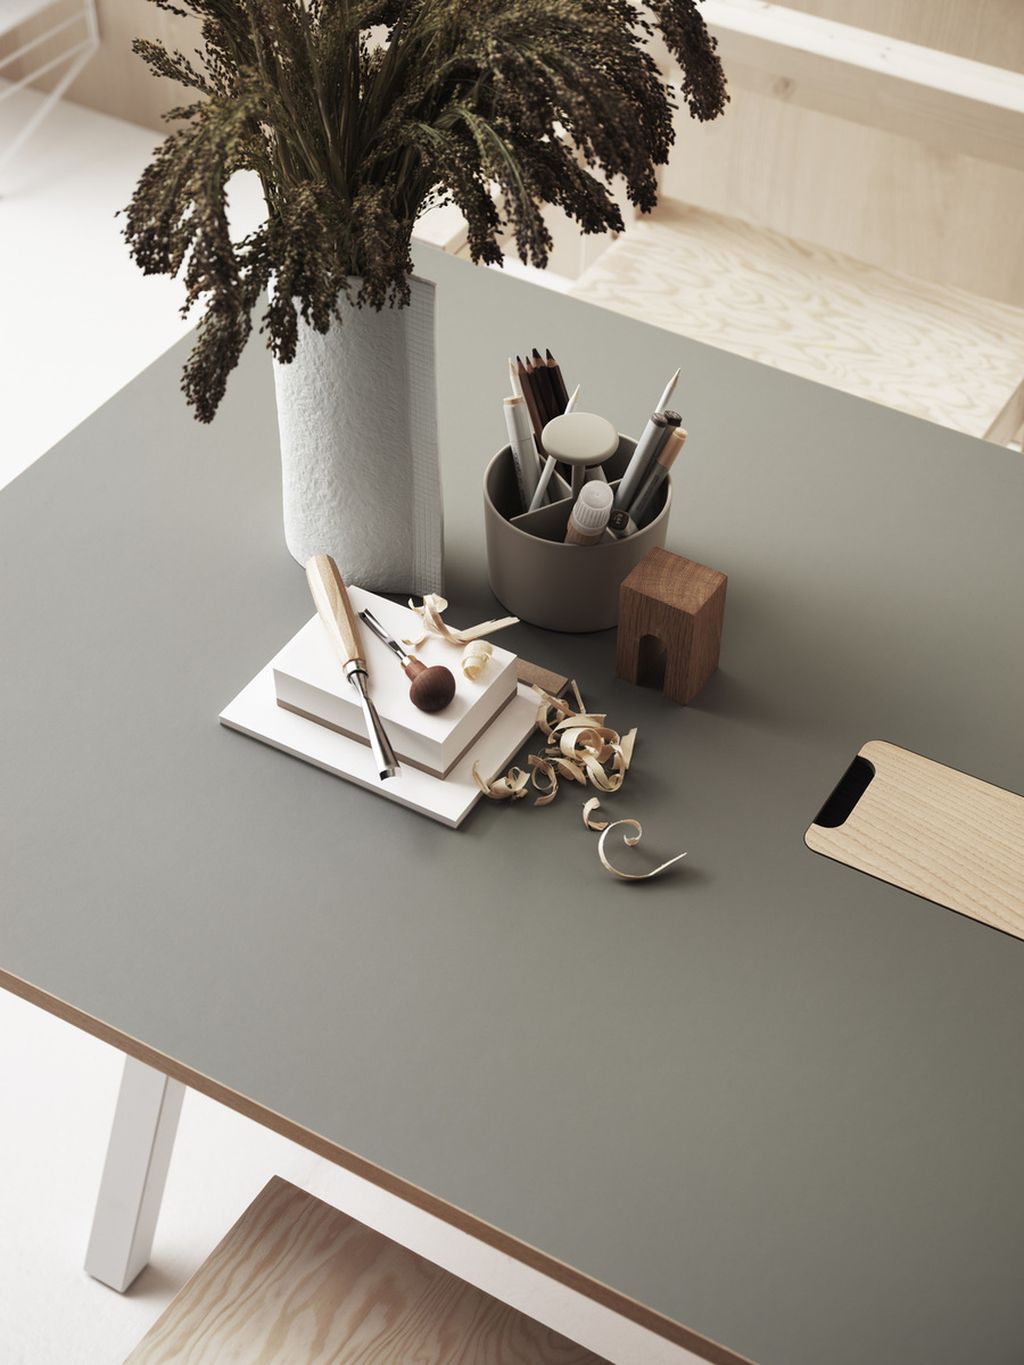 String Furniture Tableau de travail réglable en hauteur 78x140 cm, linoléum gris clair